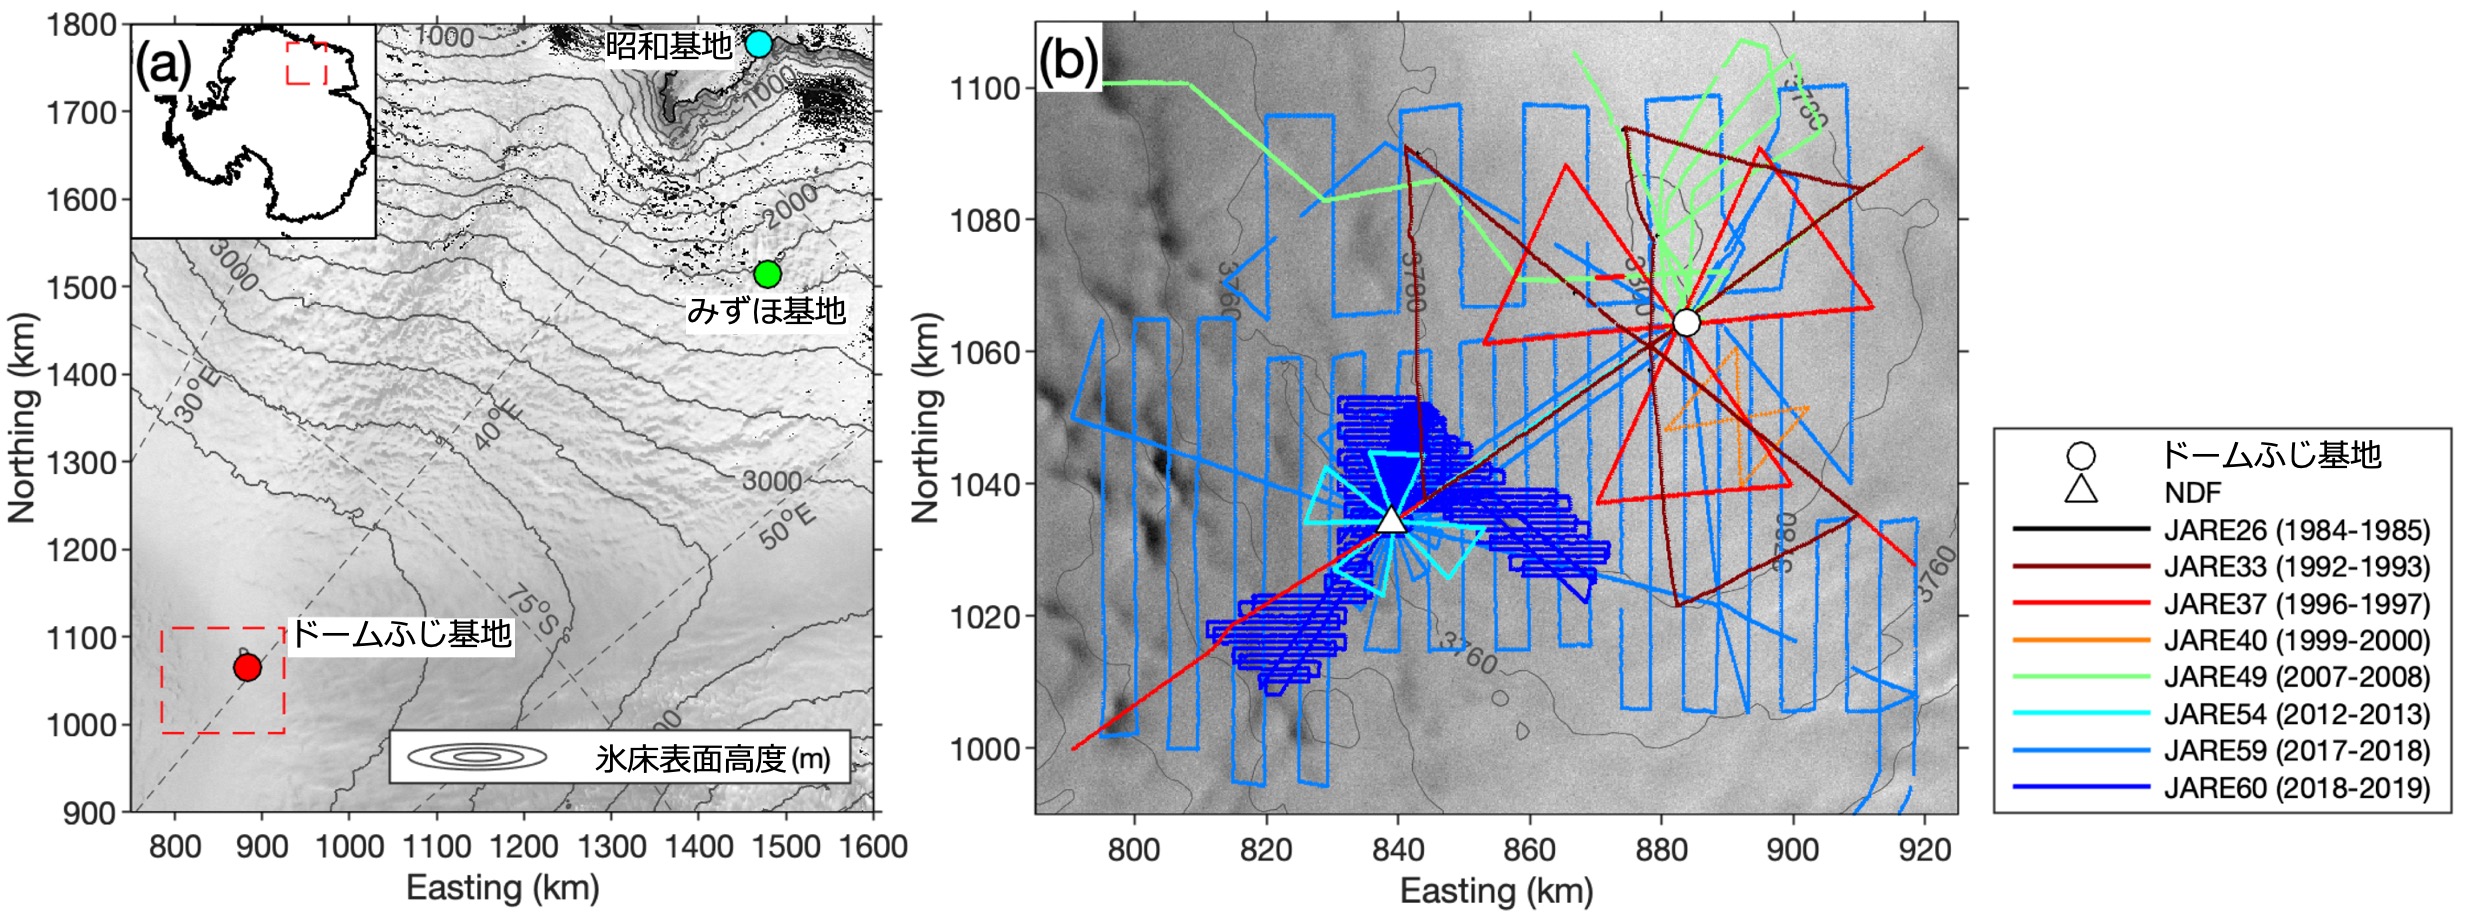 図2： （a）東南極の昭和基地とドームふじ地域を示す地図。赤枠は（b）で示す領域。等高線は氷床表面高度を200メートル間隔で示す。（b）ドームふじ近傍において、第26～60次南極地域観測隊（JARE26～60）で実施した氷床レーダ探査の測線。等高線は20メートル間隔で示す。背景はRADARSAT-1 L1画像（©CSA, 1997）。の画像